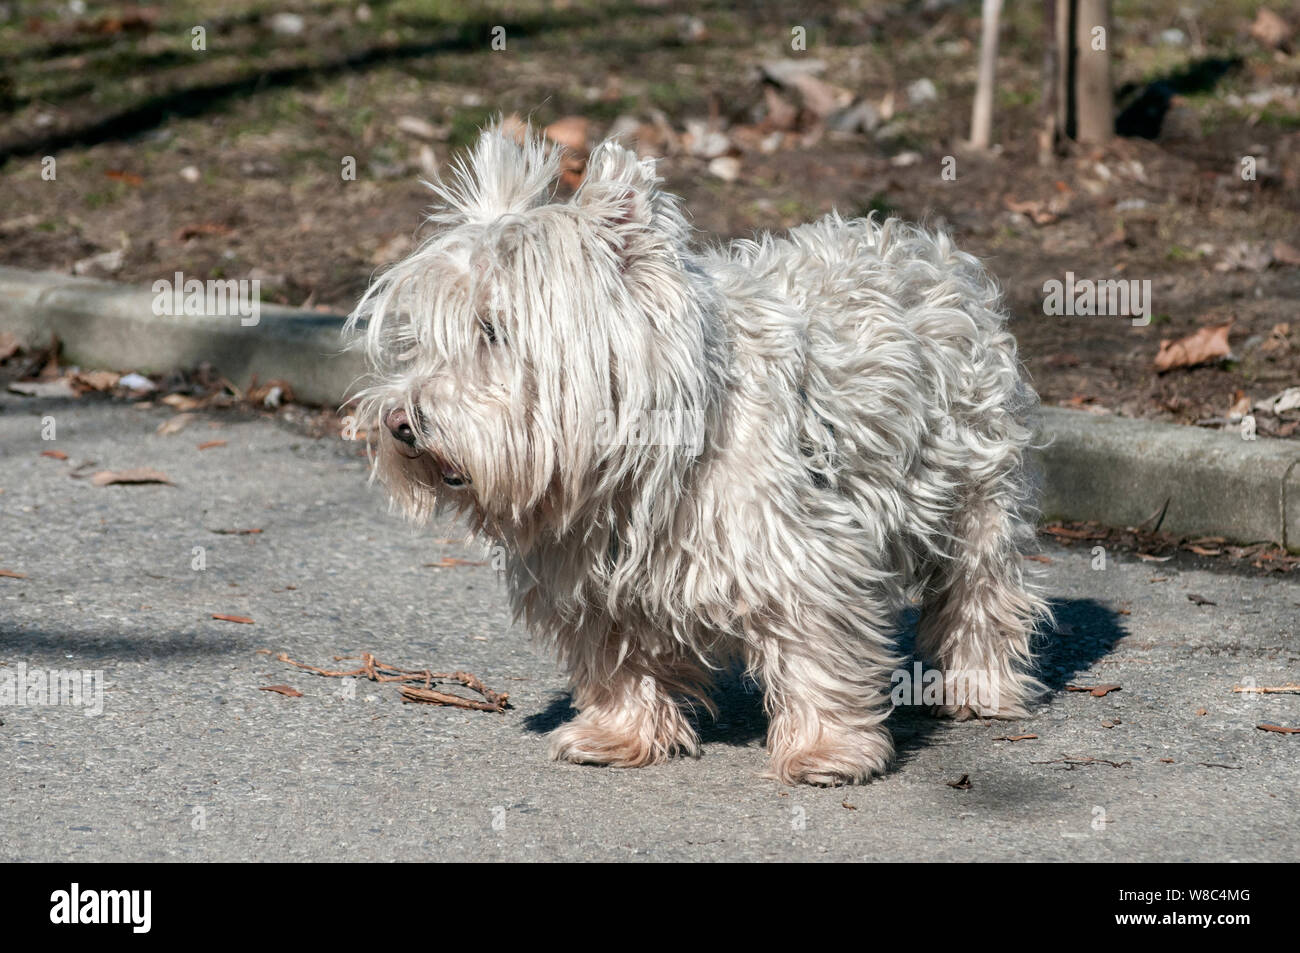 Carino scotch bianco terrier su park alley nella giornata di sole Foto Stock